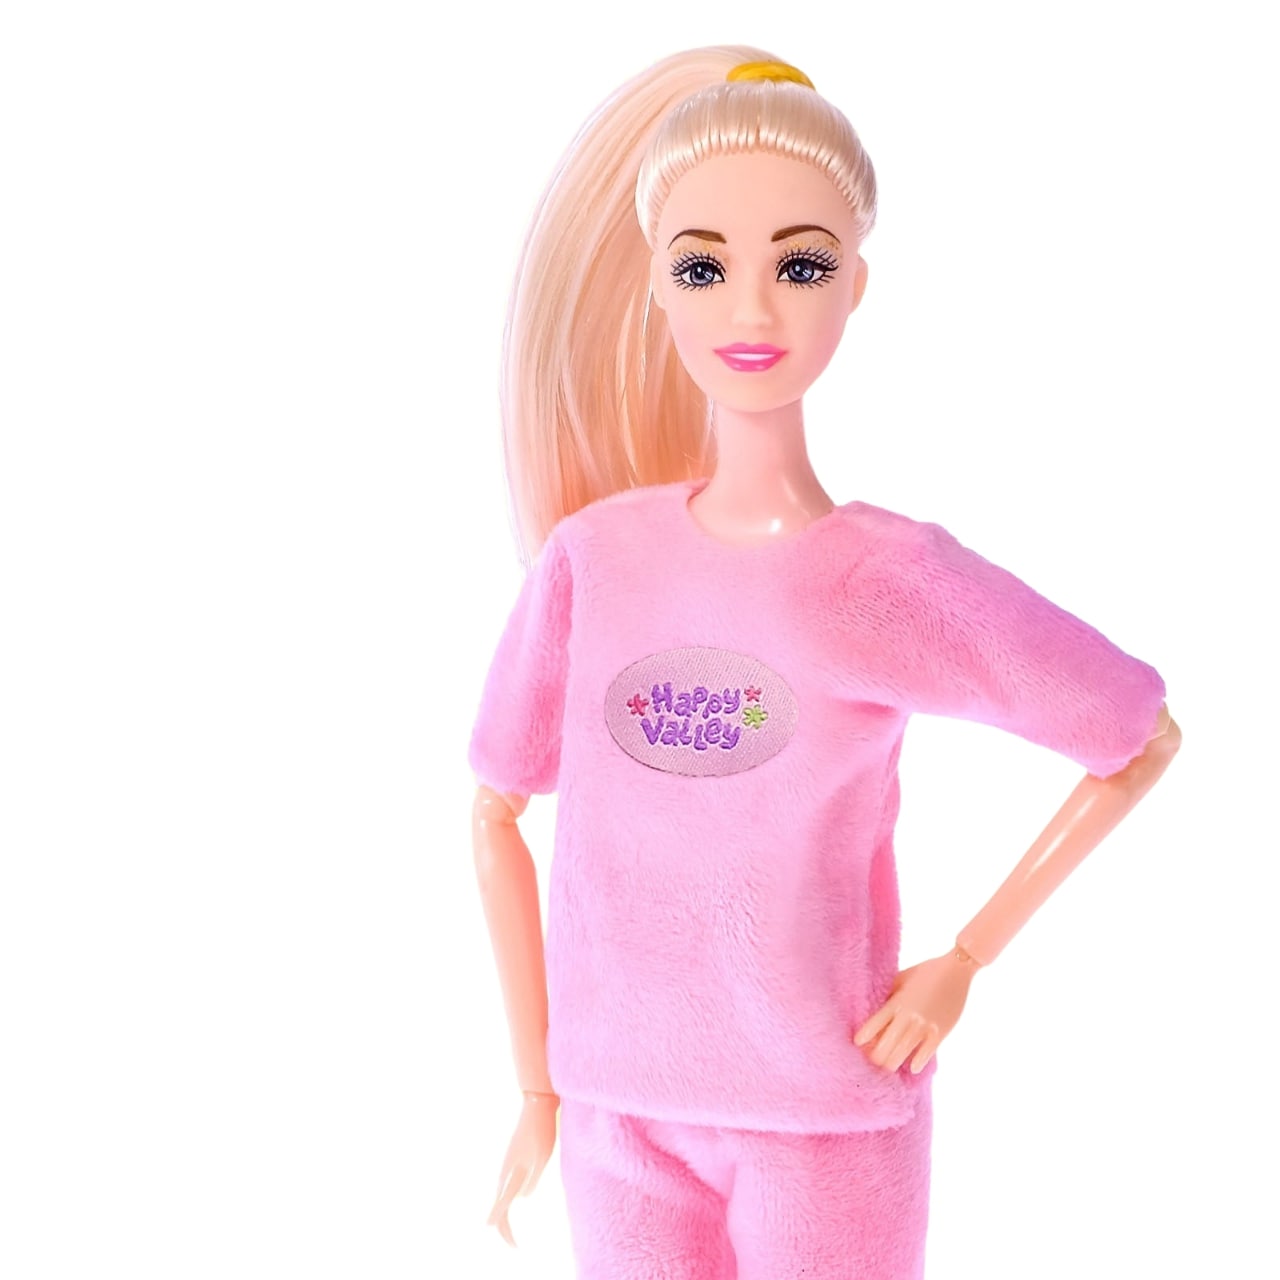 Кукла-модель Happy Valley Соня. Пижамная вечеринка кукла enchantimals пижамная вечеринка в саванне gtm33